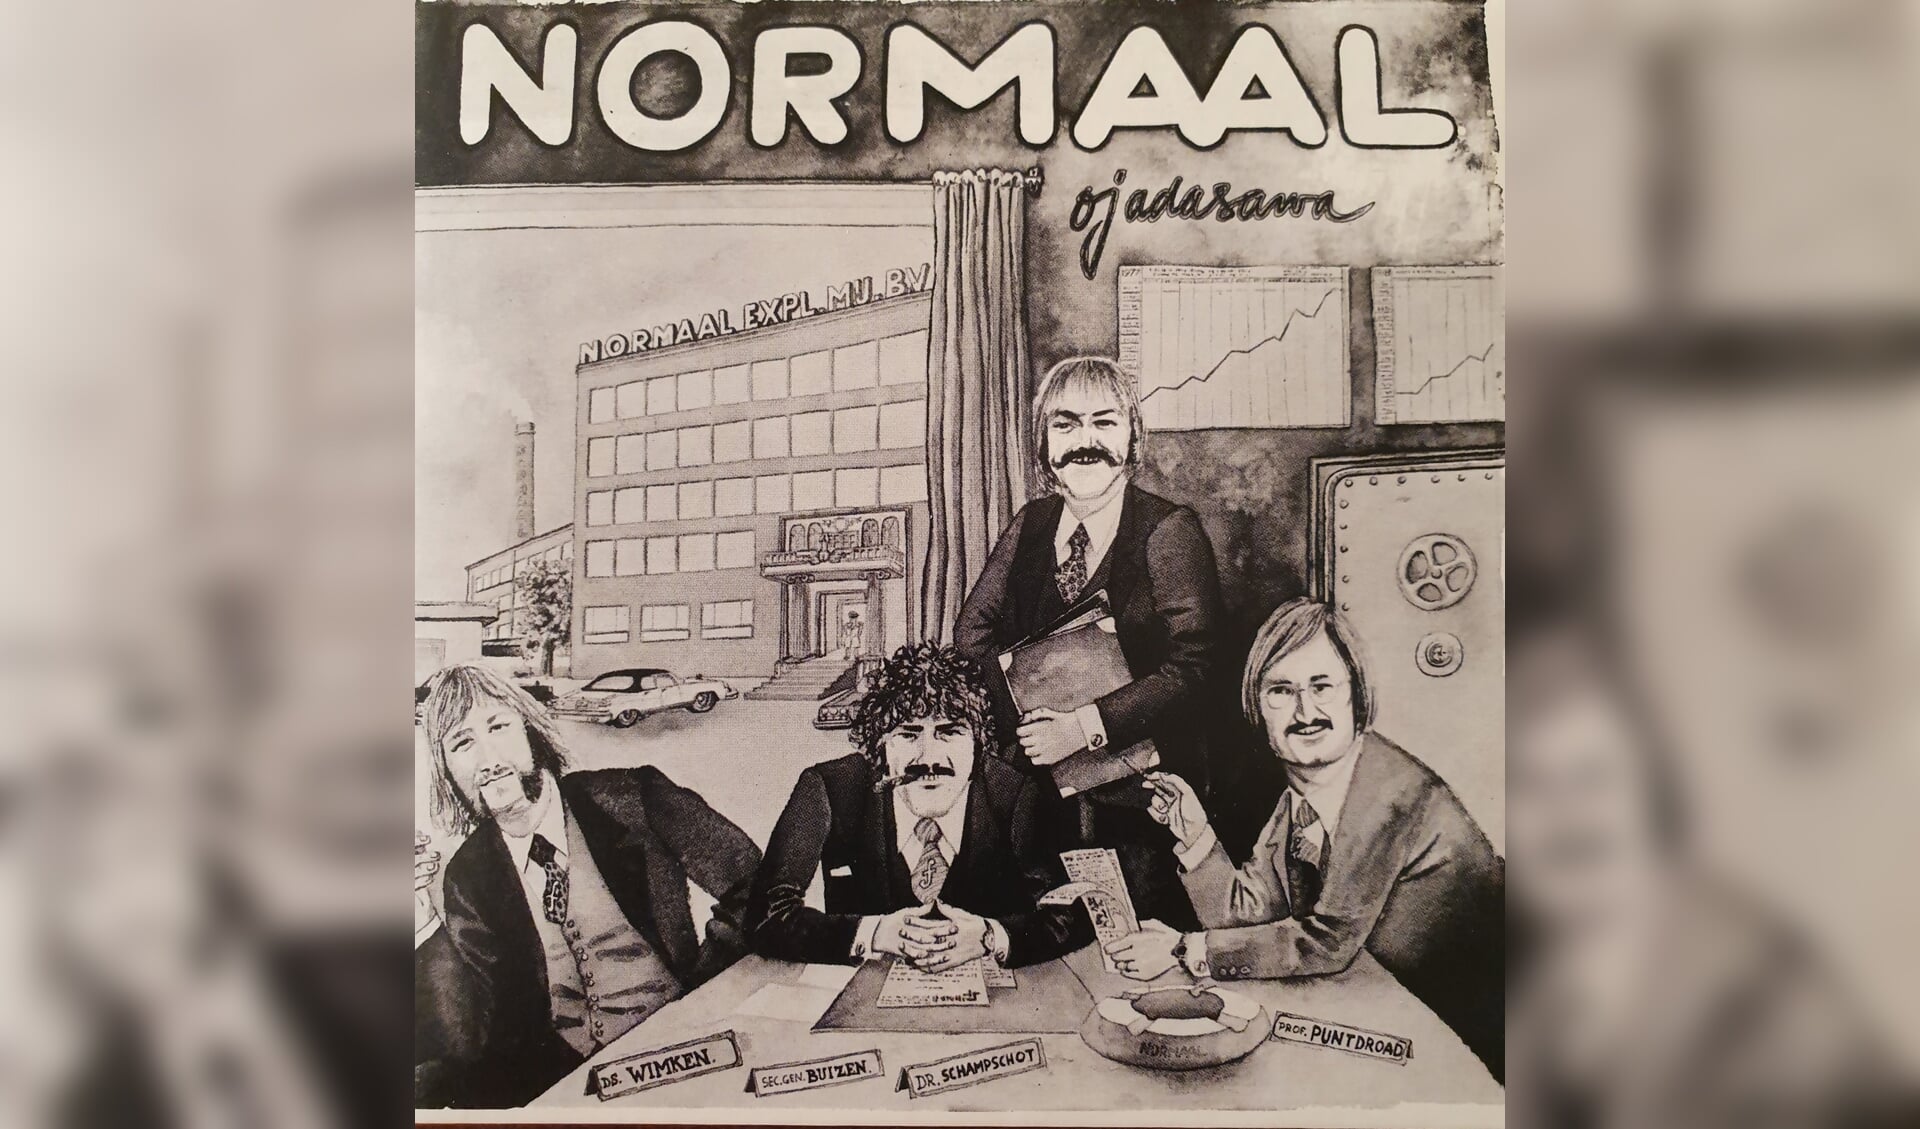 Ojadasawa? Nee hoor, er wordt nu echt gewerkt aan een nieuwe cd van Normaal in oude bezetting, met Tim Kelder voor wijlen Jan Manschot. Hier allen op de hoes van 'Ojadasawa' uit 1978.